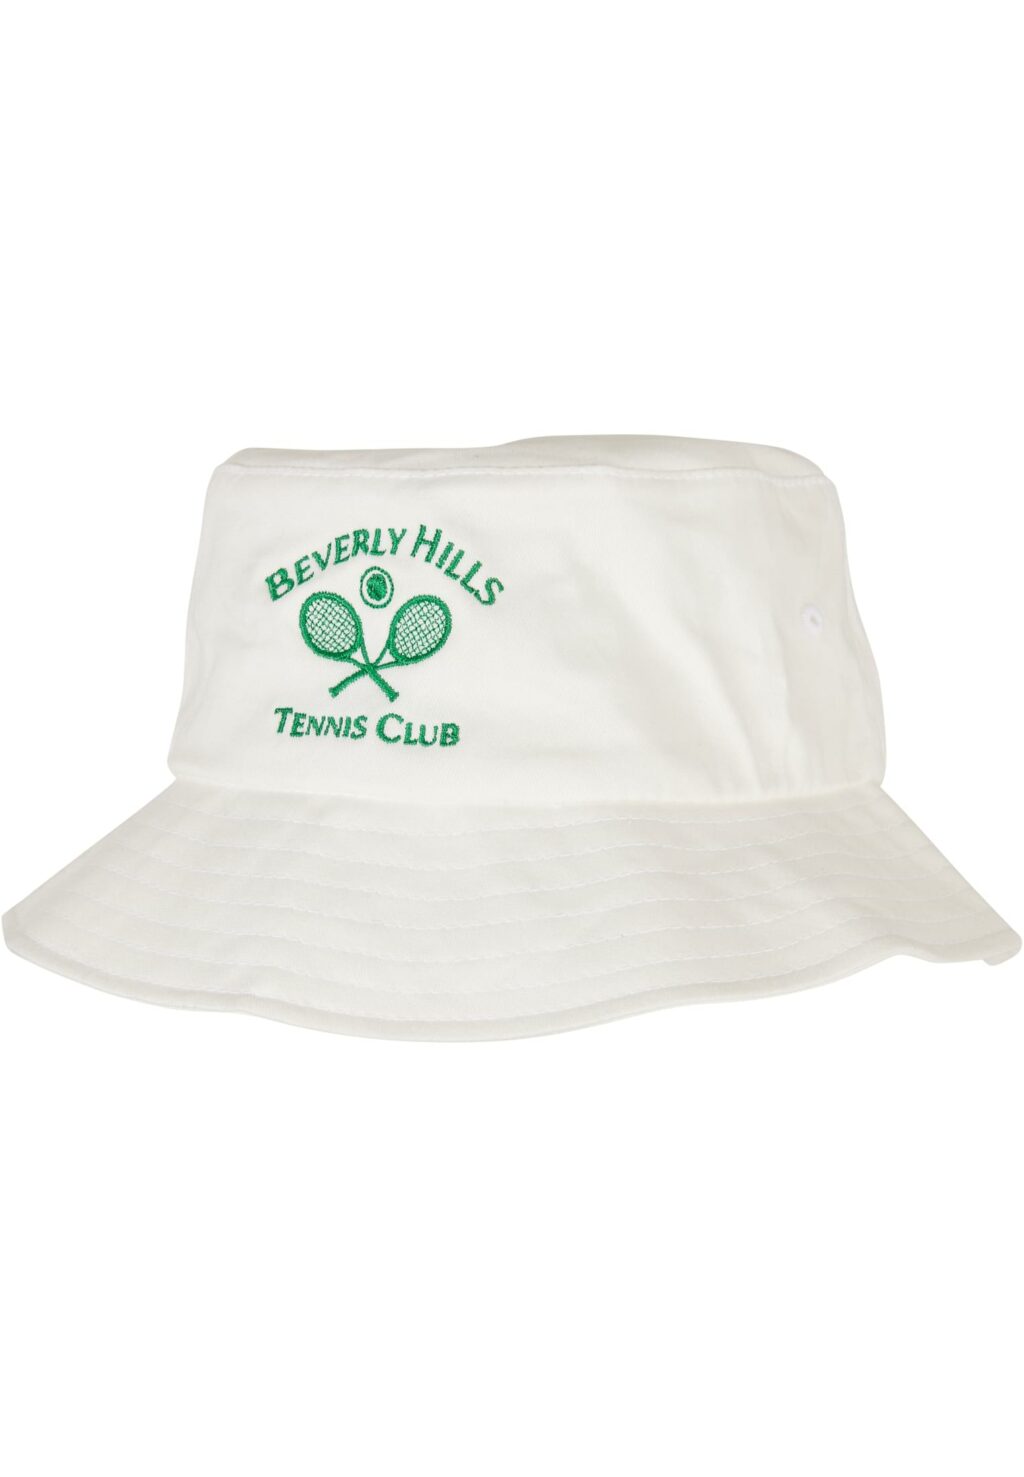 Beverly Hills Tennis Club Bucket Hat white one MT2266